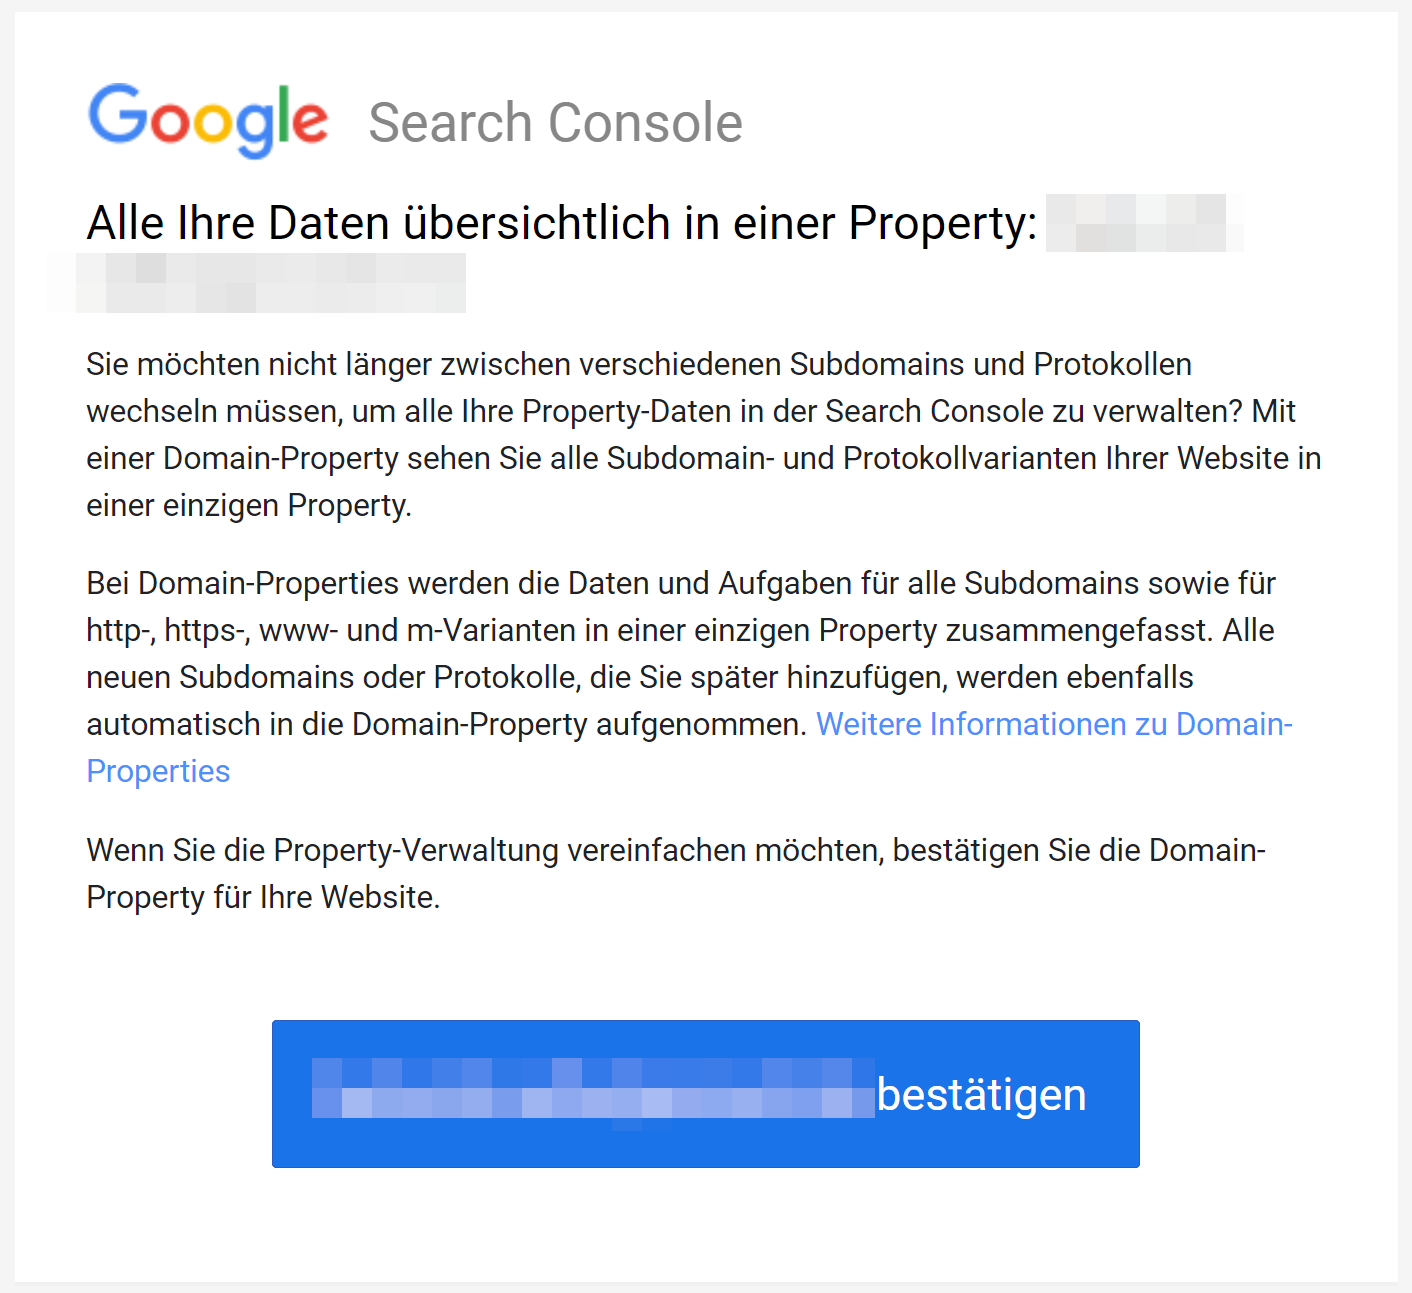 Google empfiehlt die Verwendung von Domain Properties